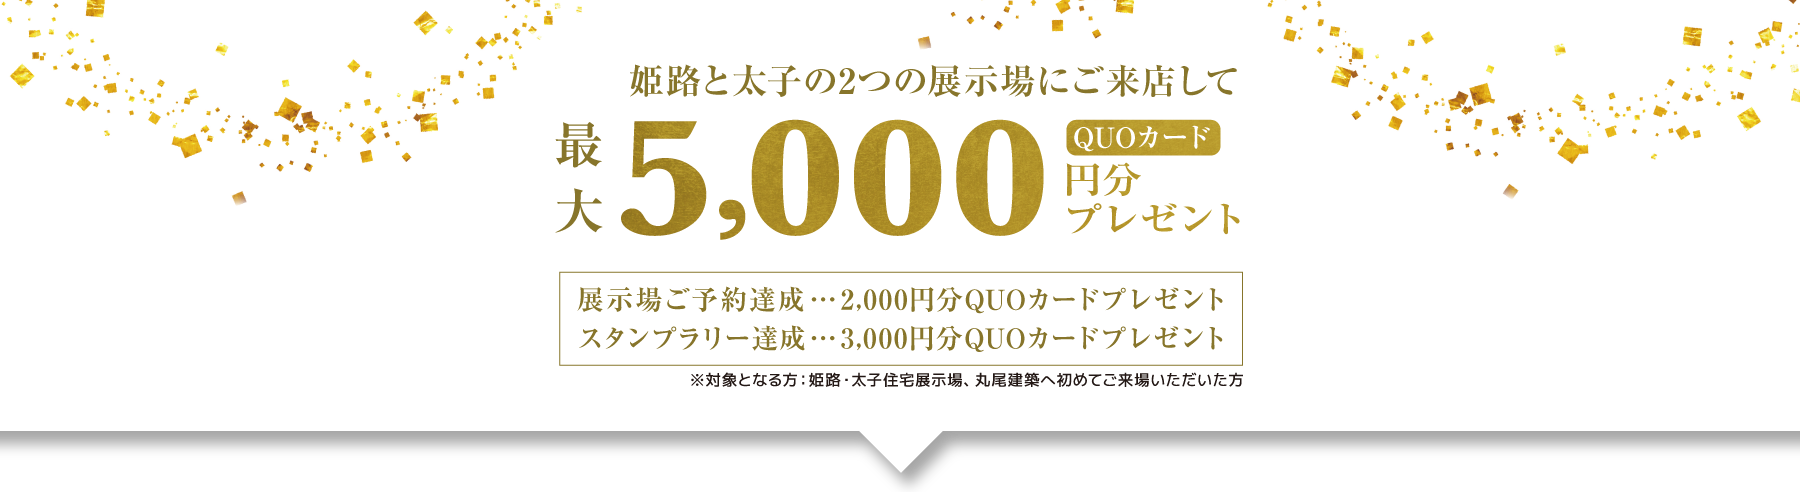 姫路と太子の2つの展示場に来店してクオカード5000円分プレゼント